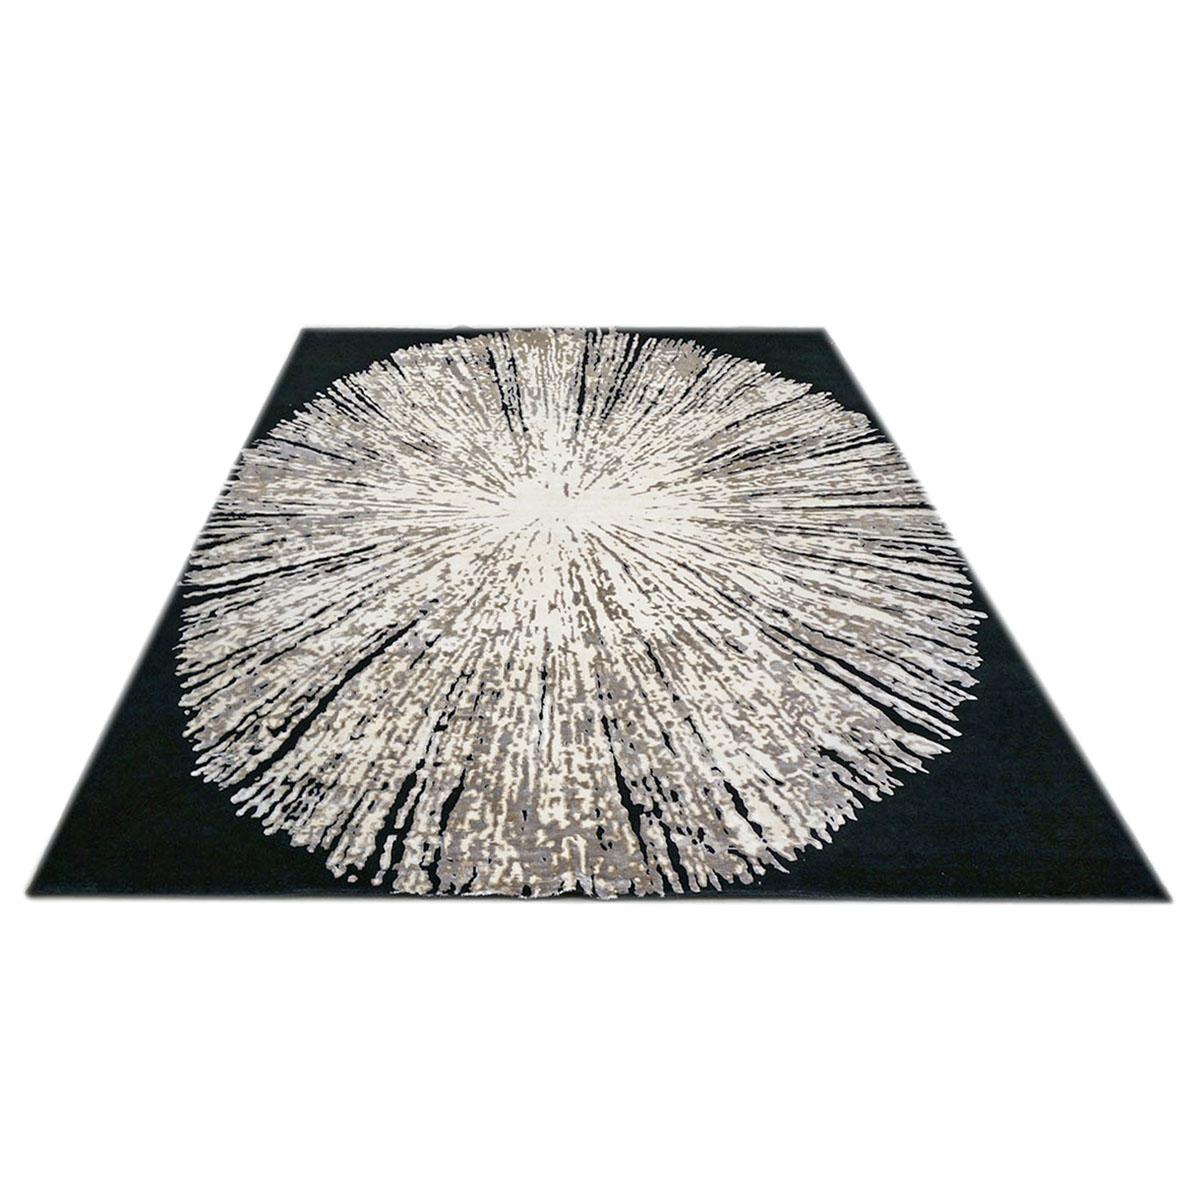 Ashly Fine Rugs präsentiert einen 10x14 schwarzen, weißen und grauen handgefertigten Teppich aus Wolle und Seide, inspiriert von der Moderne, mit glänzenden Fasern und einem dicken, langlebigen Flor. Diese wunderschöne Kollektion wurde von unserer